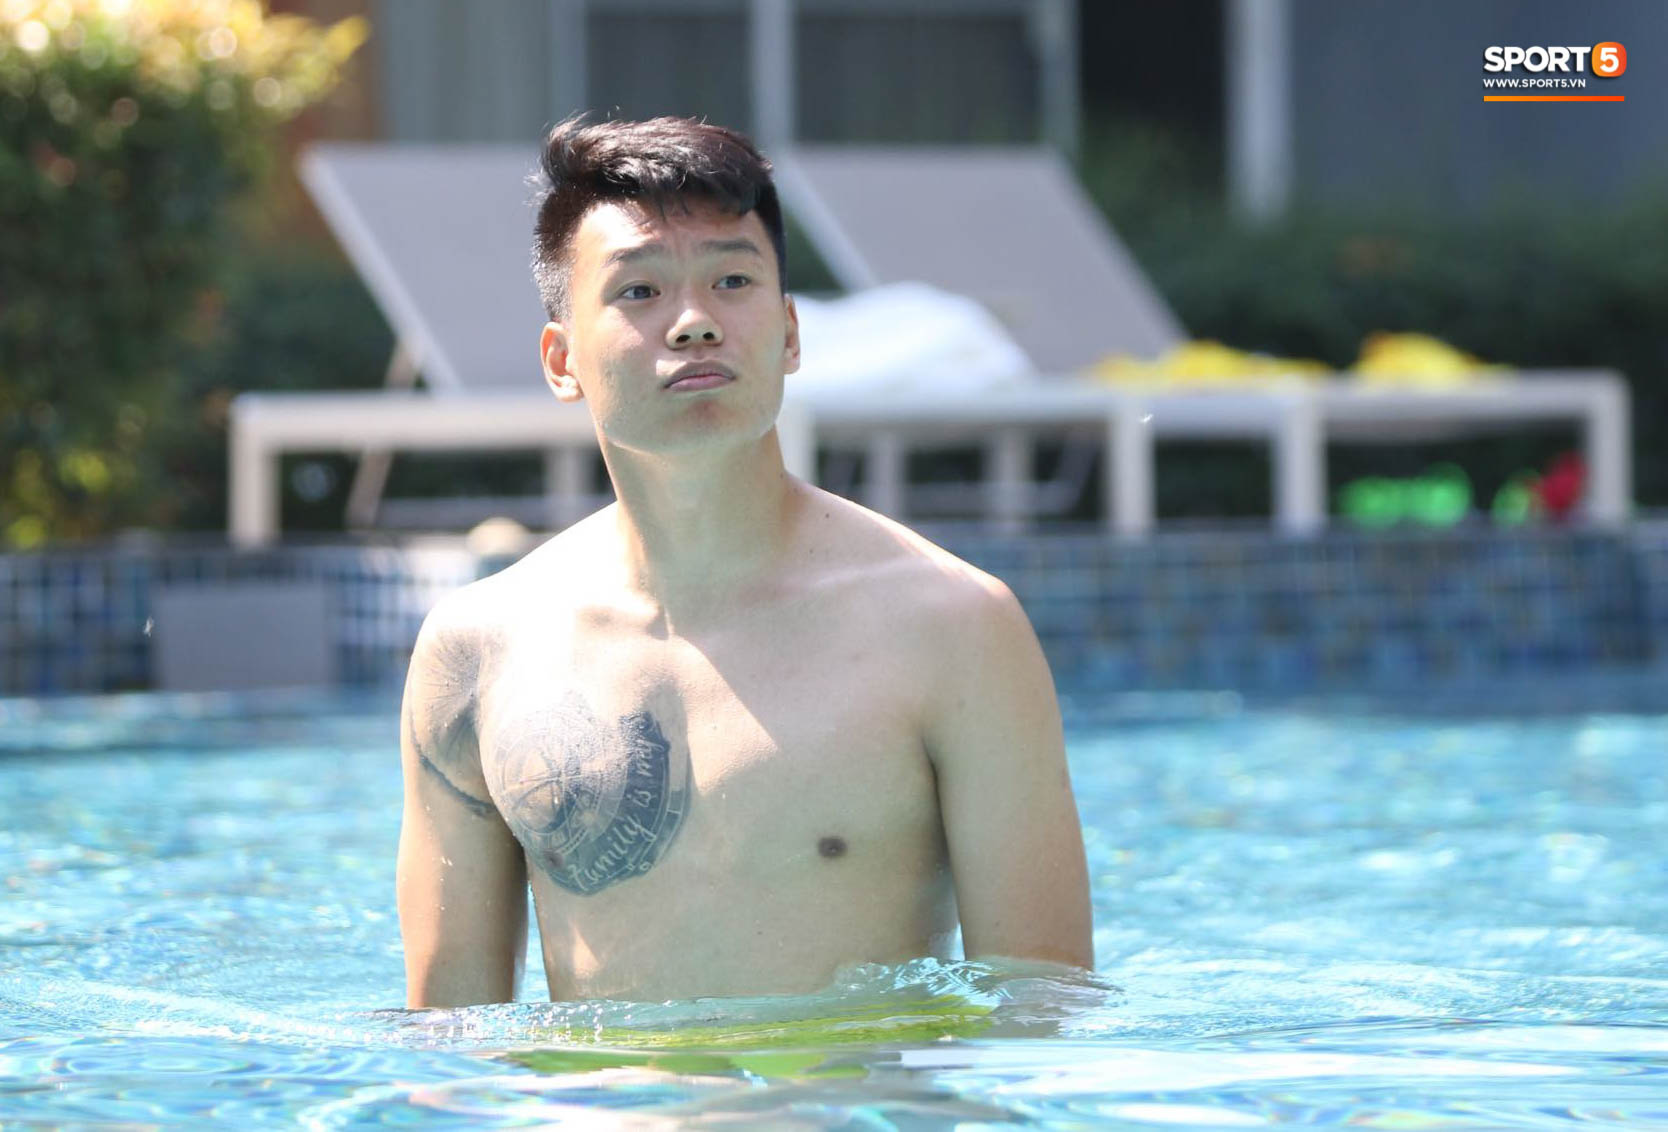 Tiến Linh cover xung quanh anh toàn là nước của Đen Vâu, tuyển thủ U23 Việt Nam khoe body săn chắc - Ảnh 8.